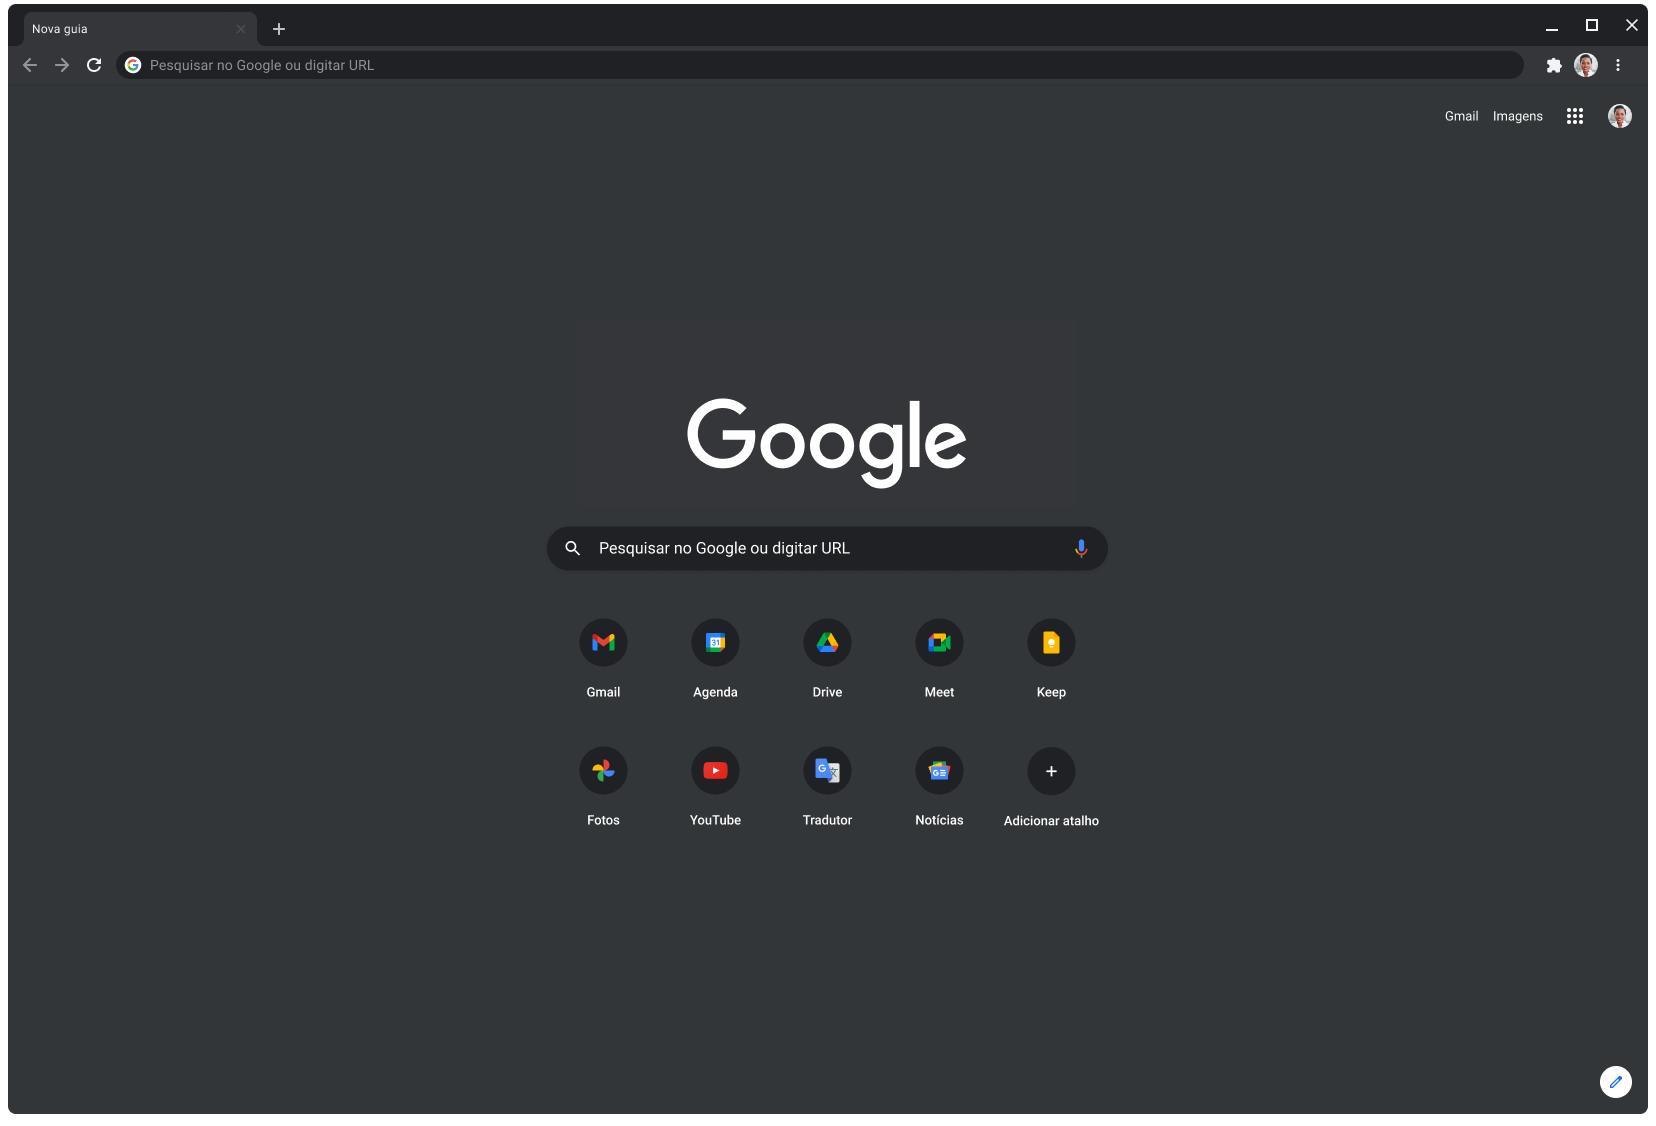 Janela do navegador Chrome no modo escuro exibindo o google.com.